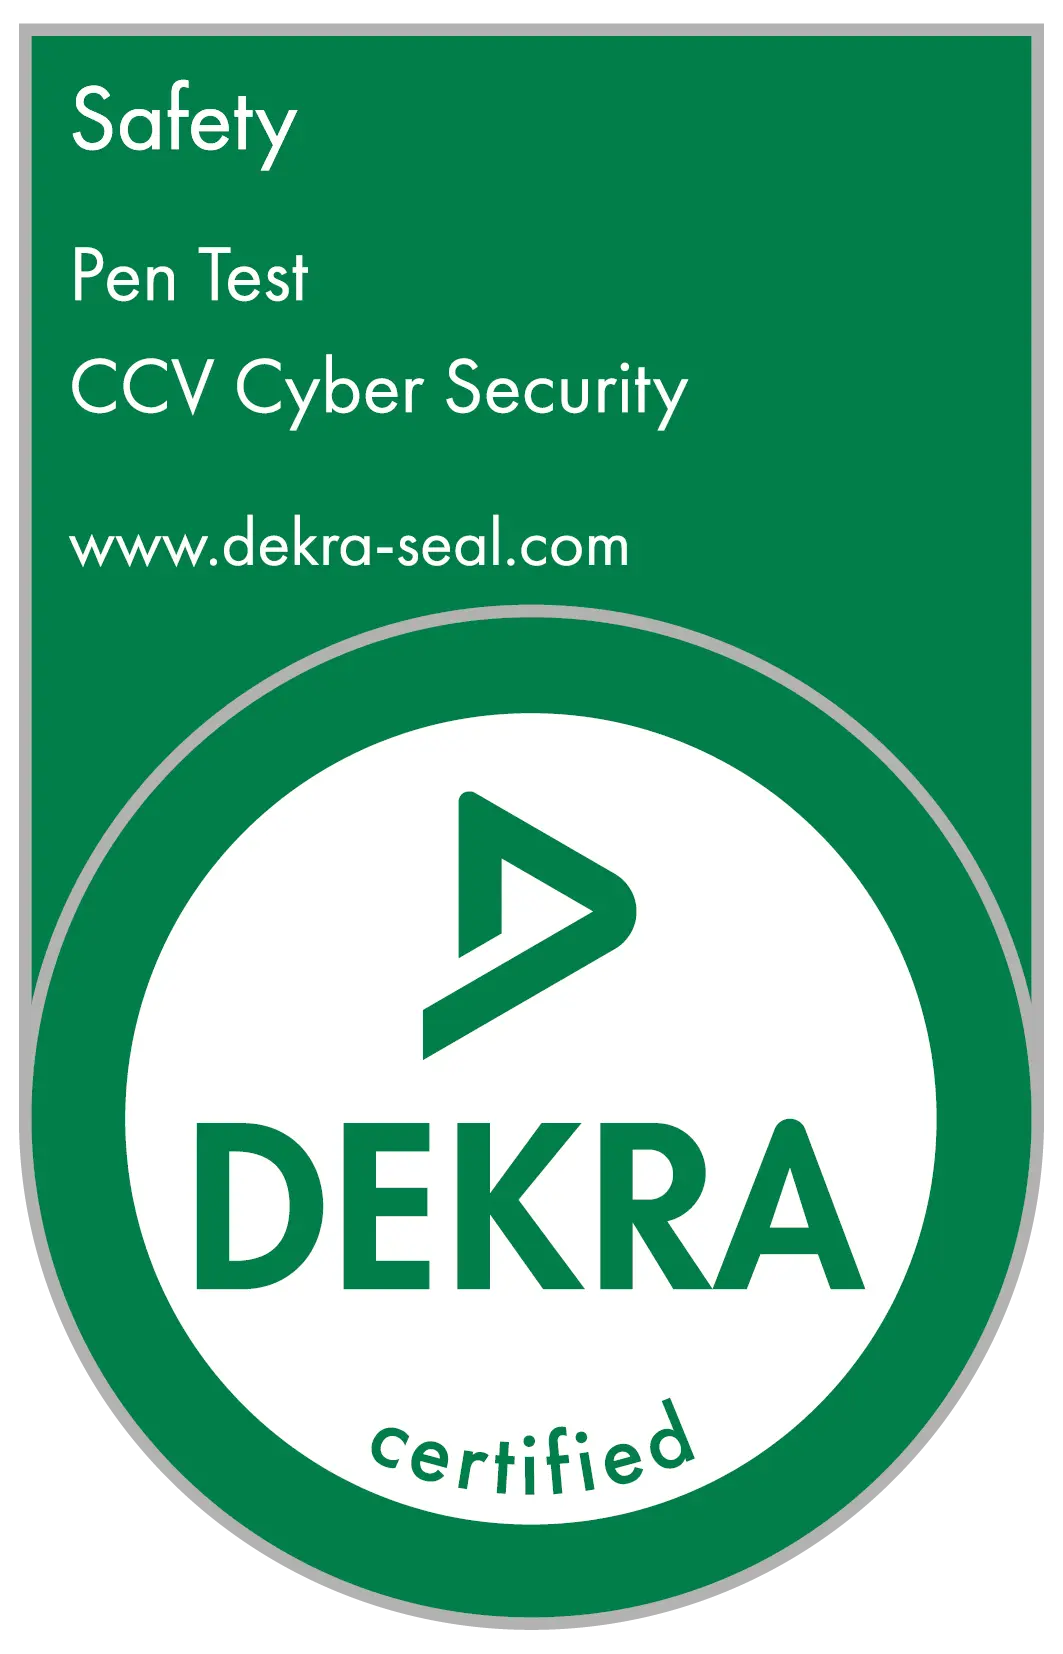 dekra ccv certified seal image